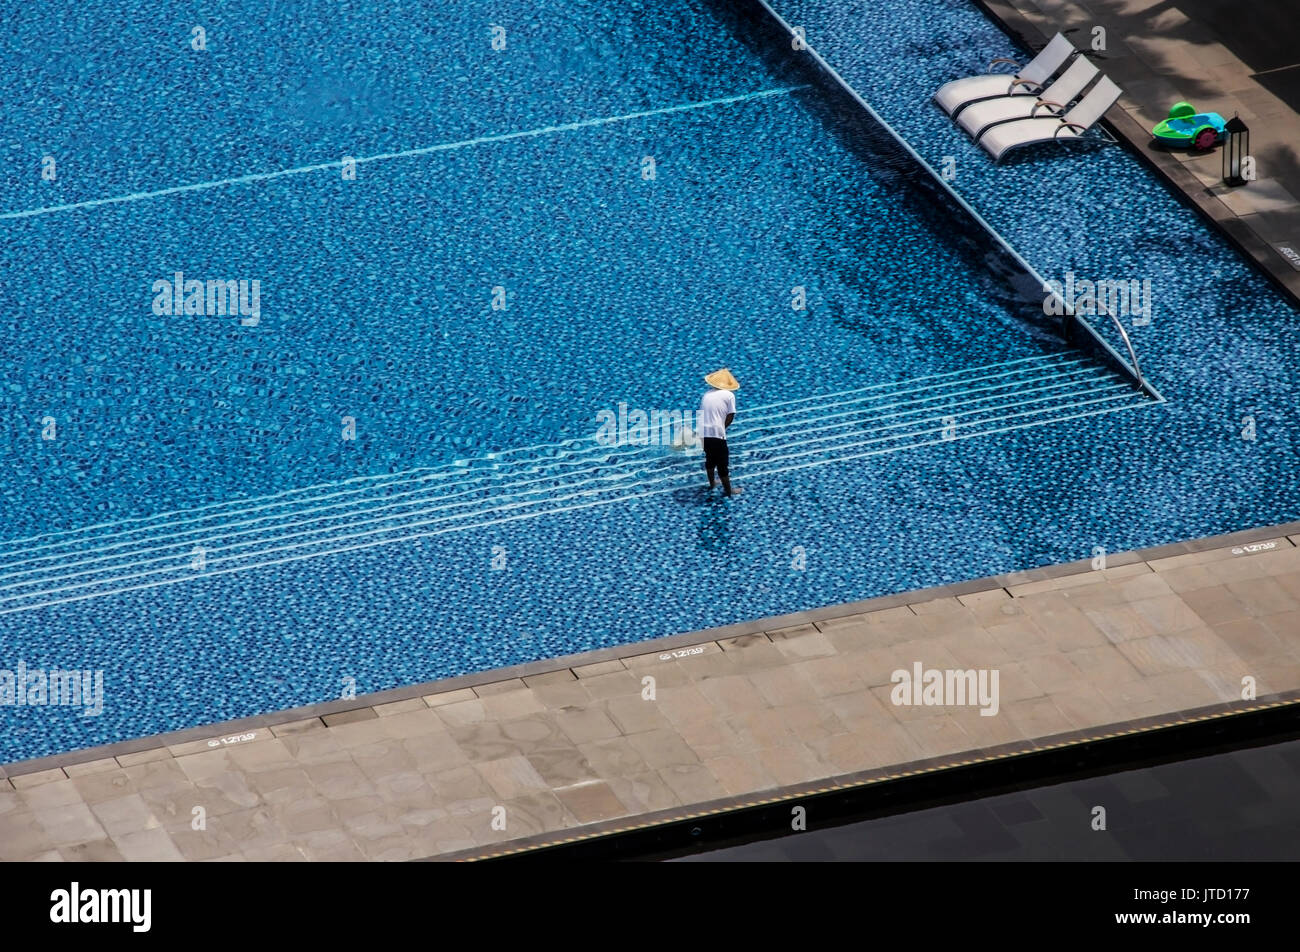 Mann Reinigung Outdoor Swimmingpool in einem tropischen Hotel Stockfoto